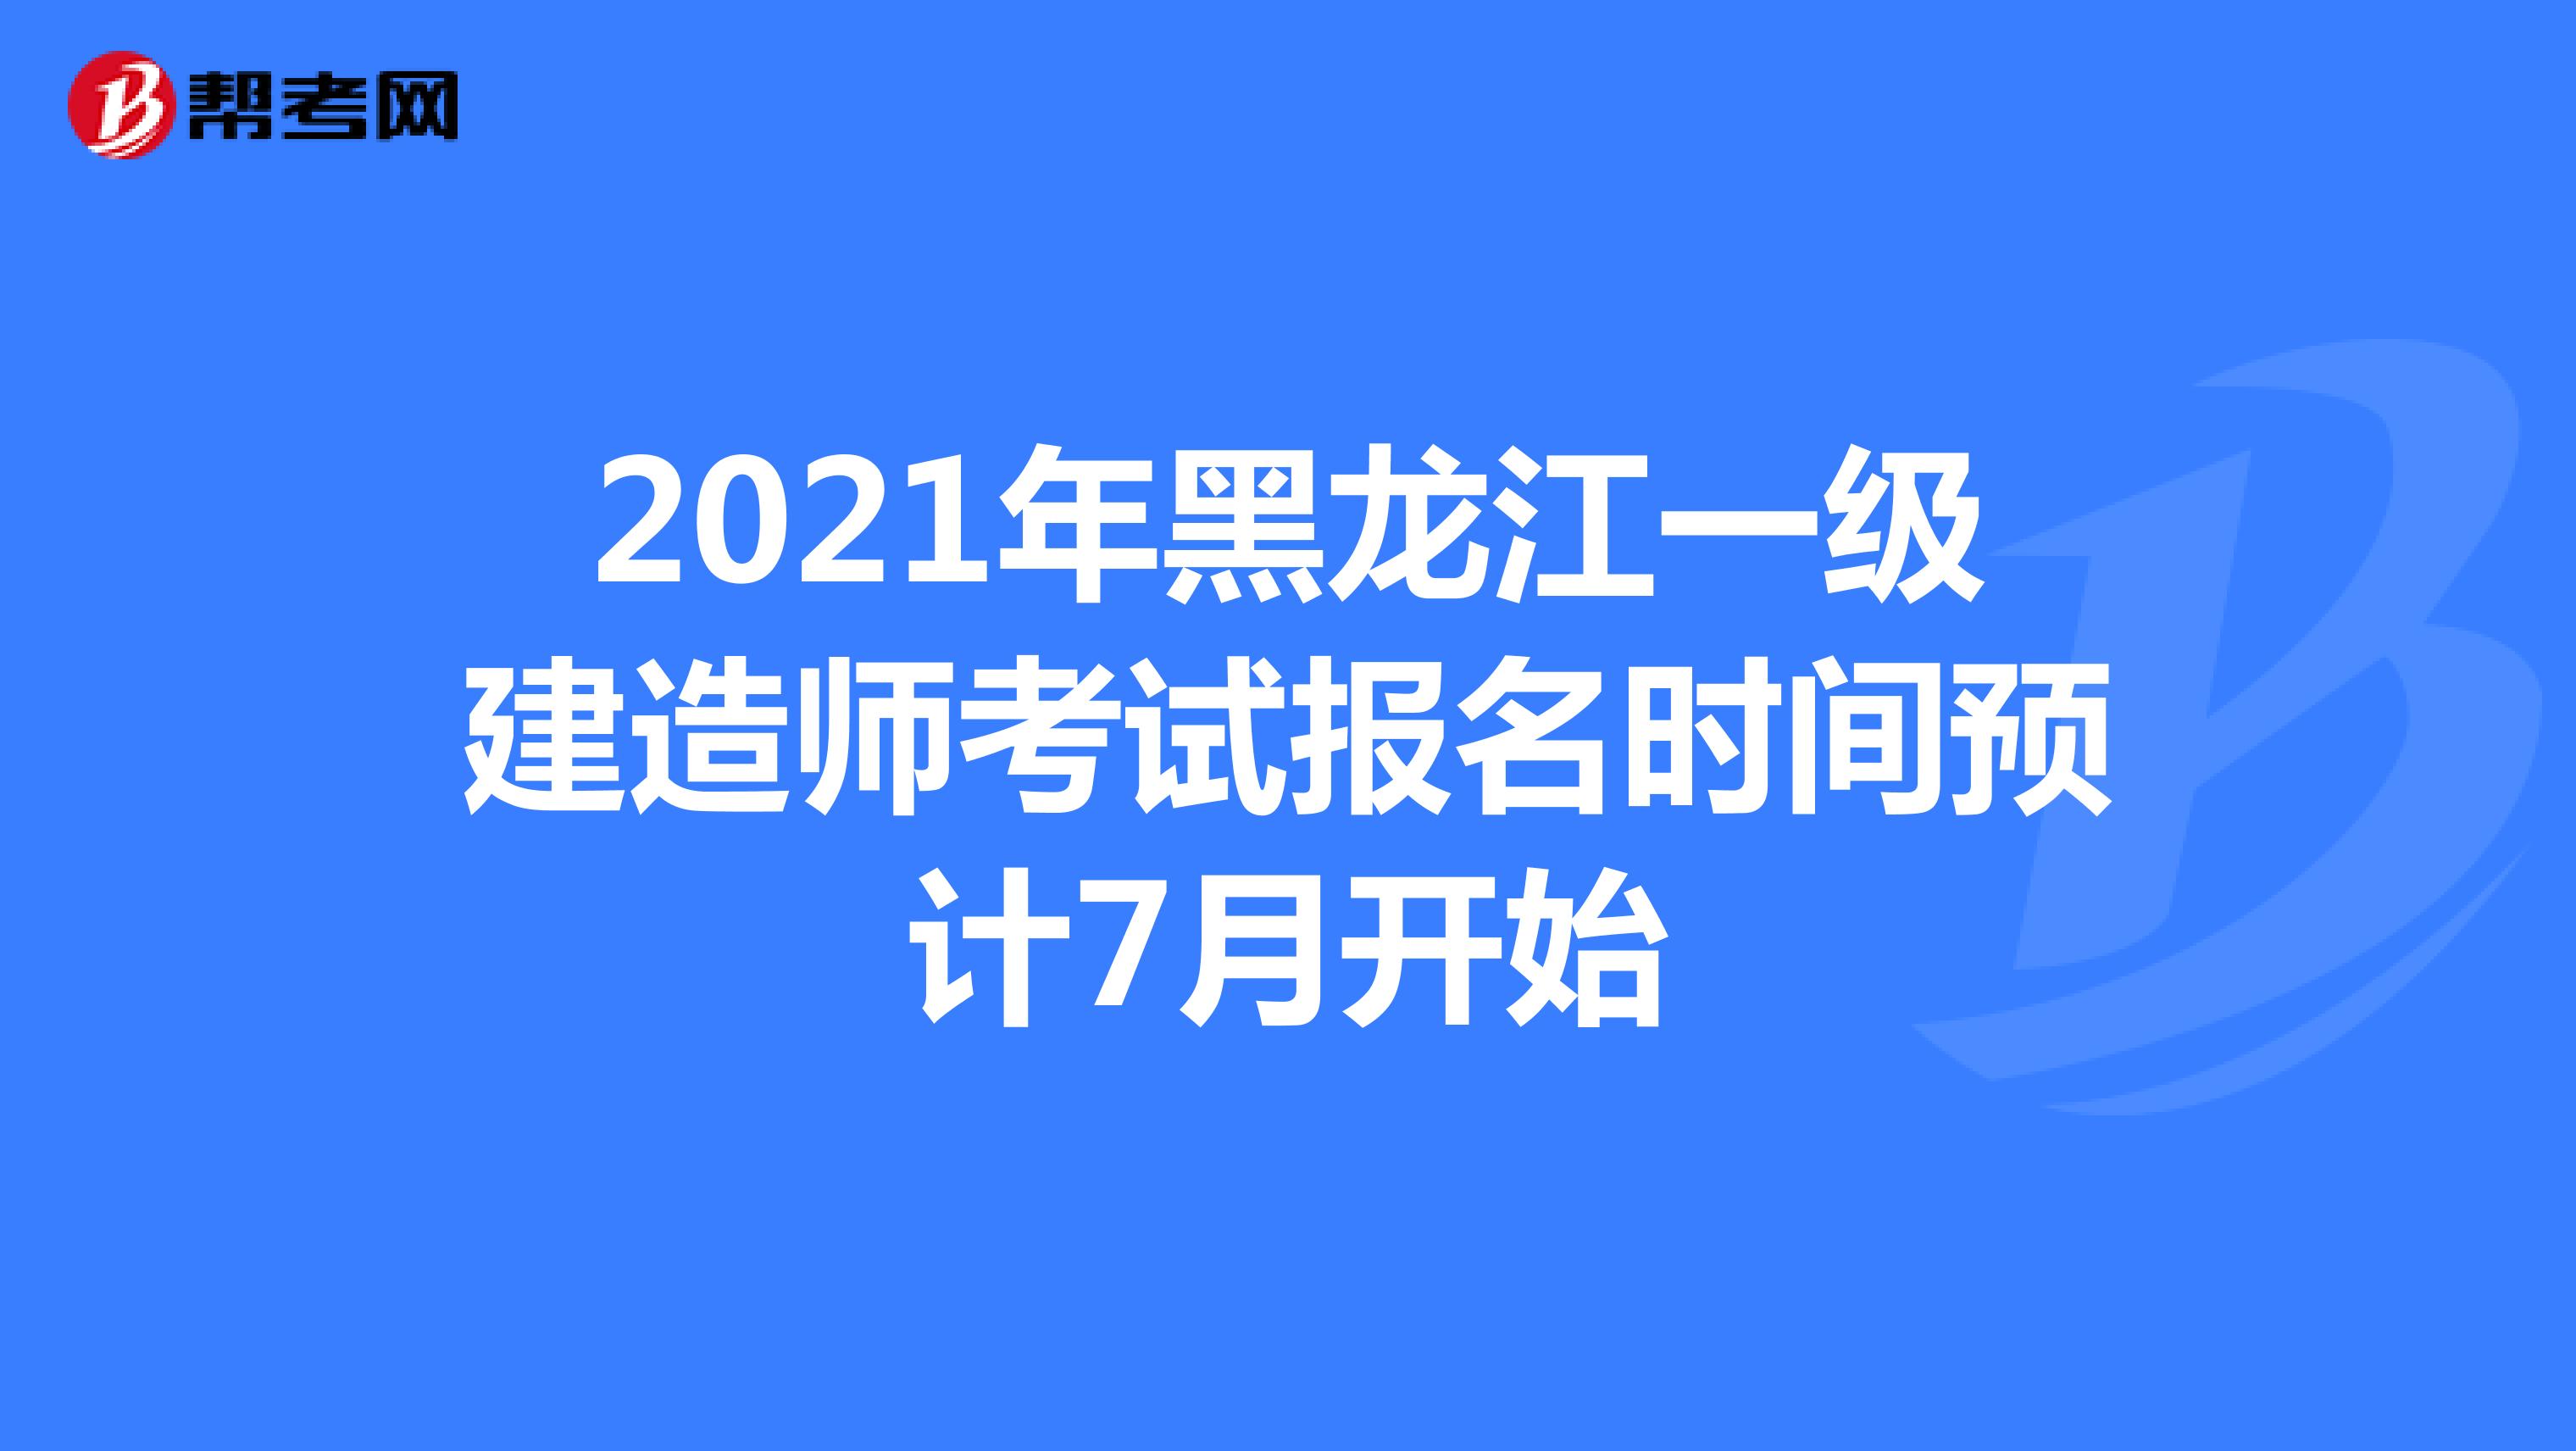 2021年黑龙江一级建造师考试报名时间预计7月开始